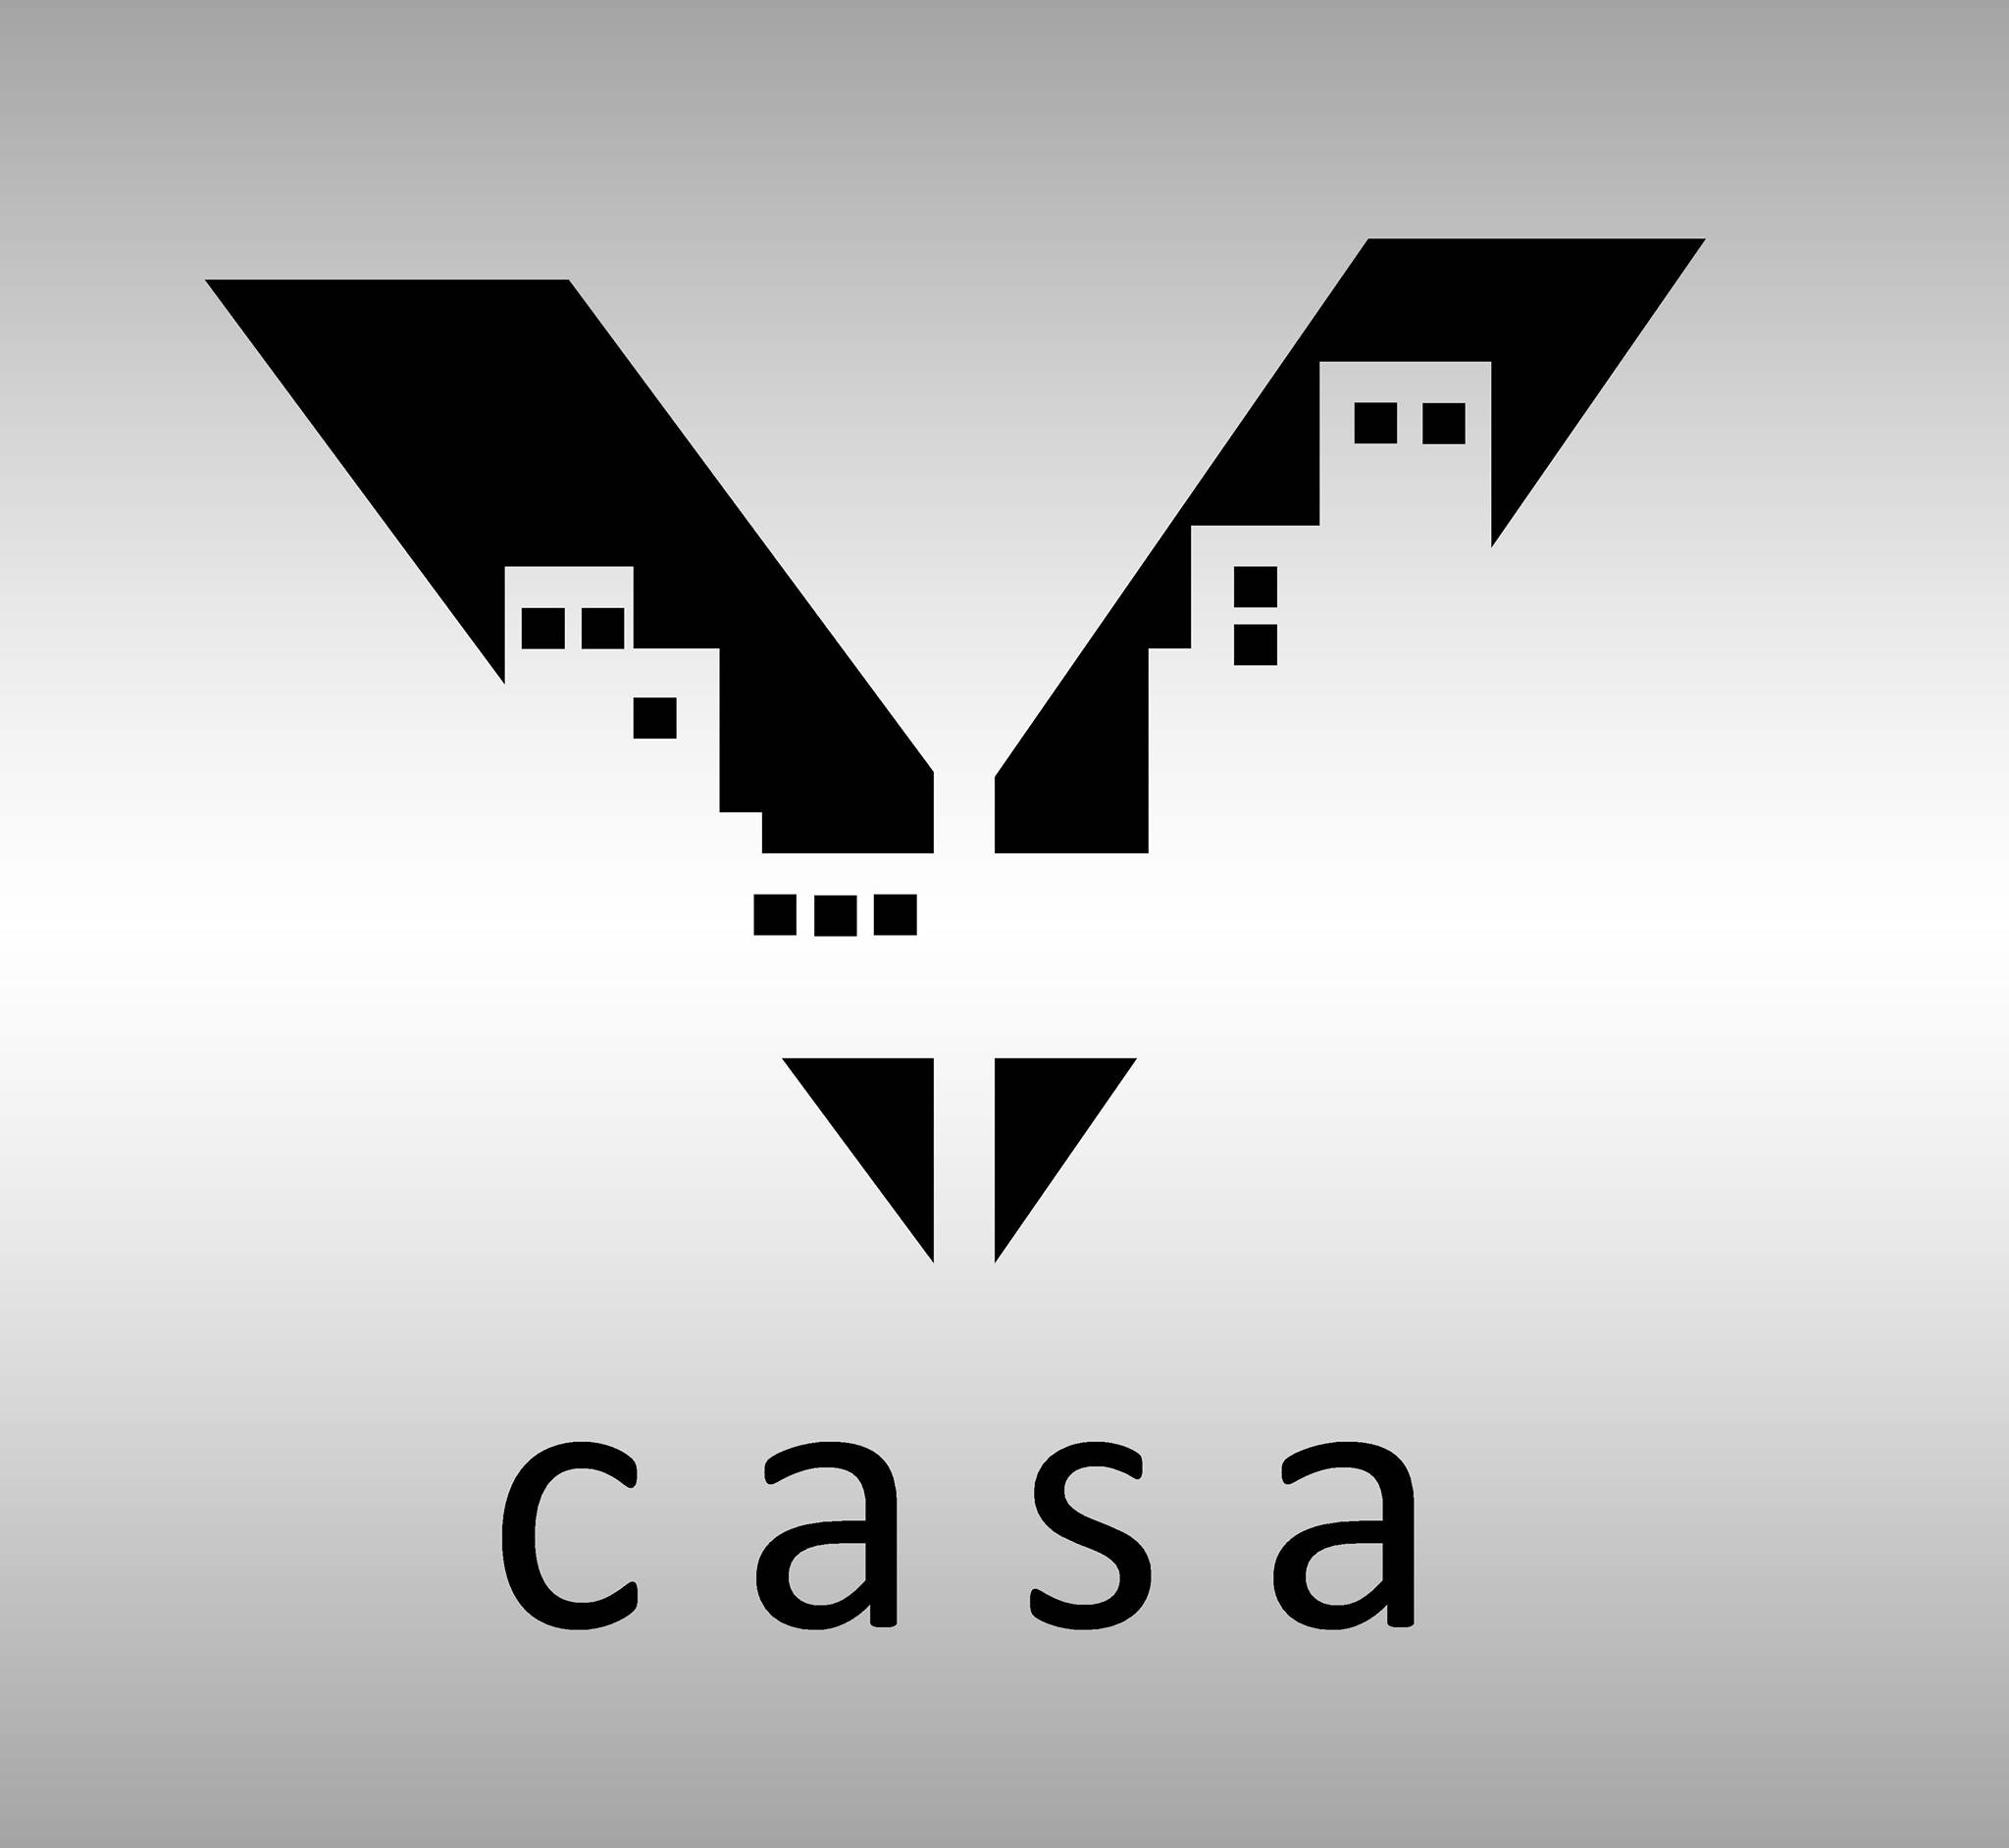 Vastucasa Architects & Interior Designer|Architect|Professional Services